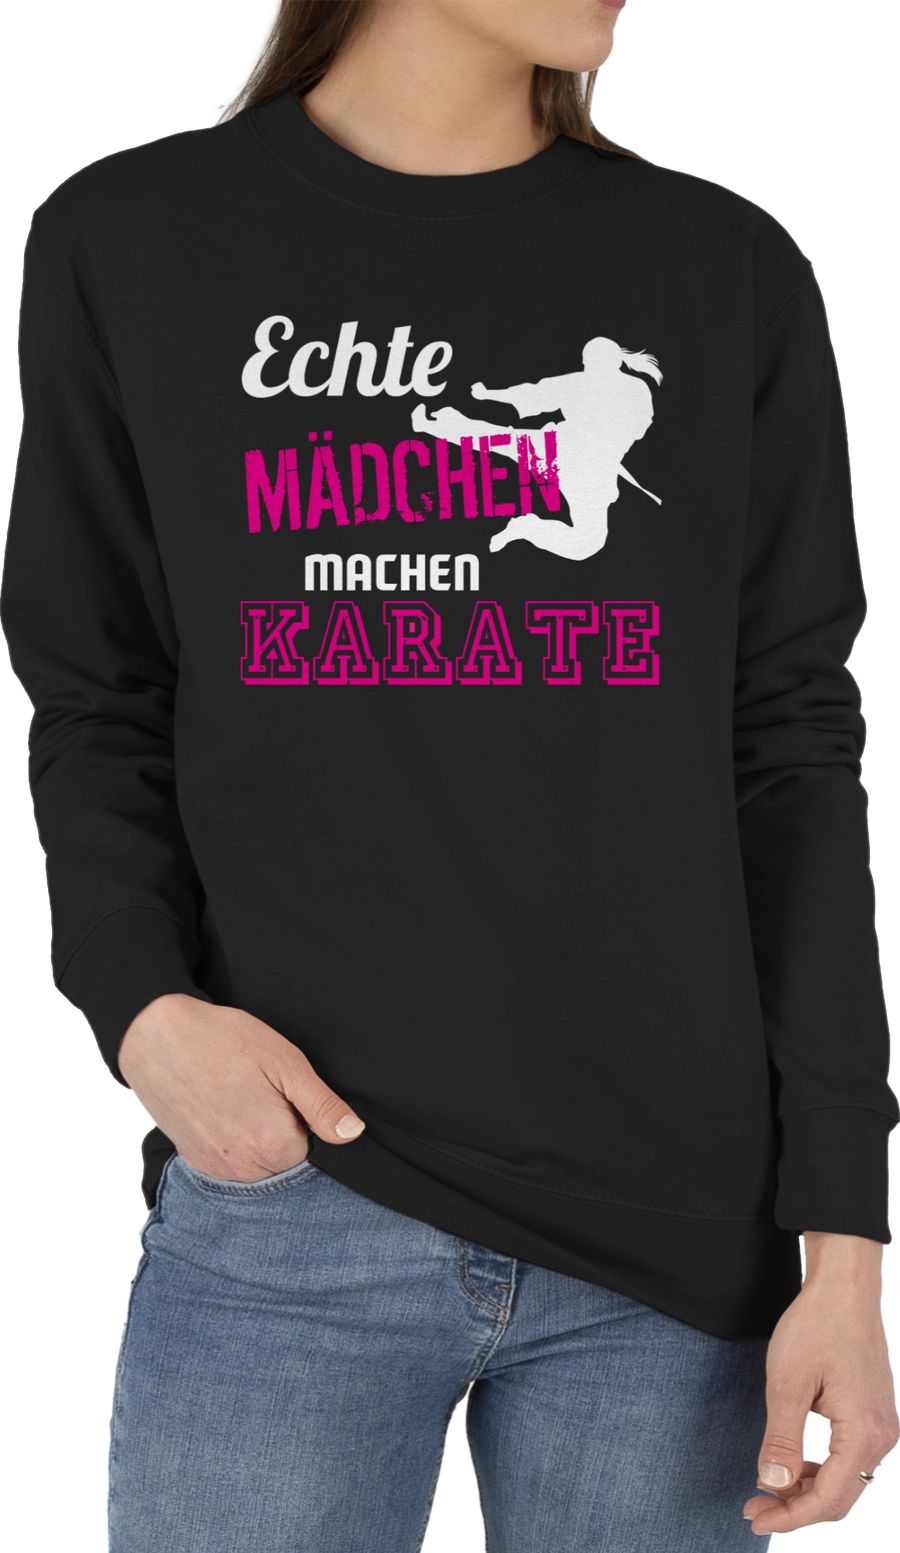 Echte Mädchen machen Karate